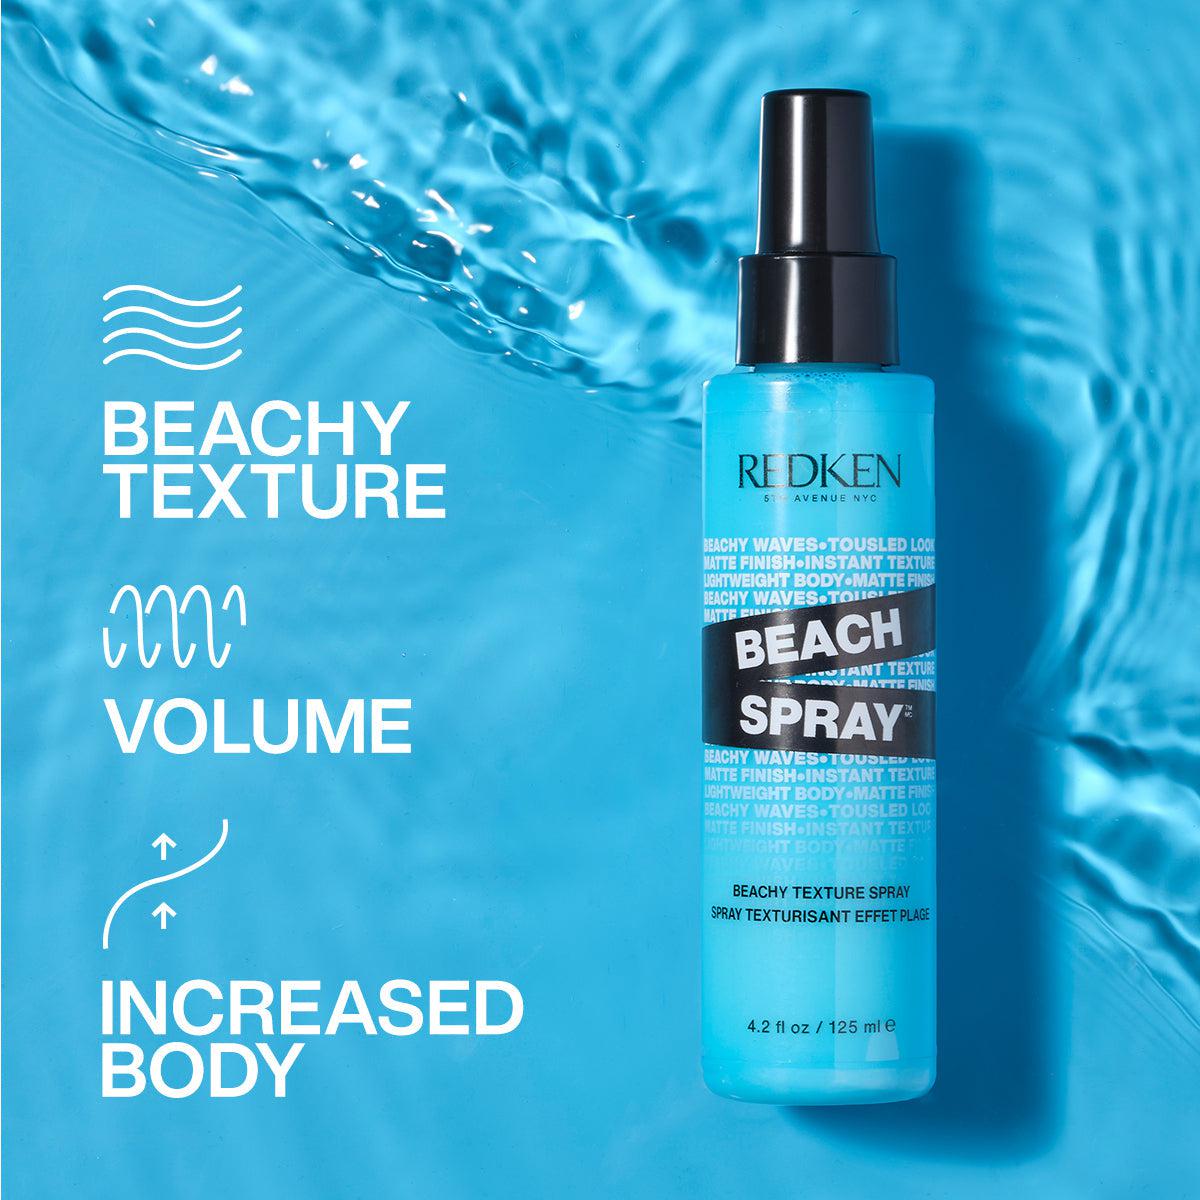 REDKEN_Beach Spray Beachy Texture Spray 125ml / 4.2oz_Cosmetic World